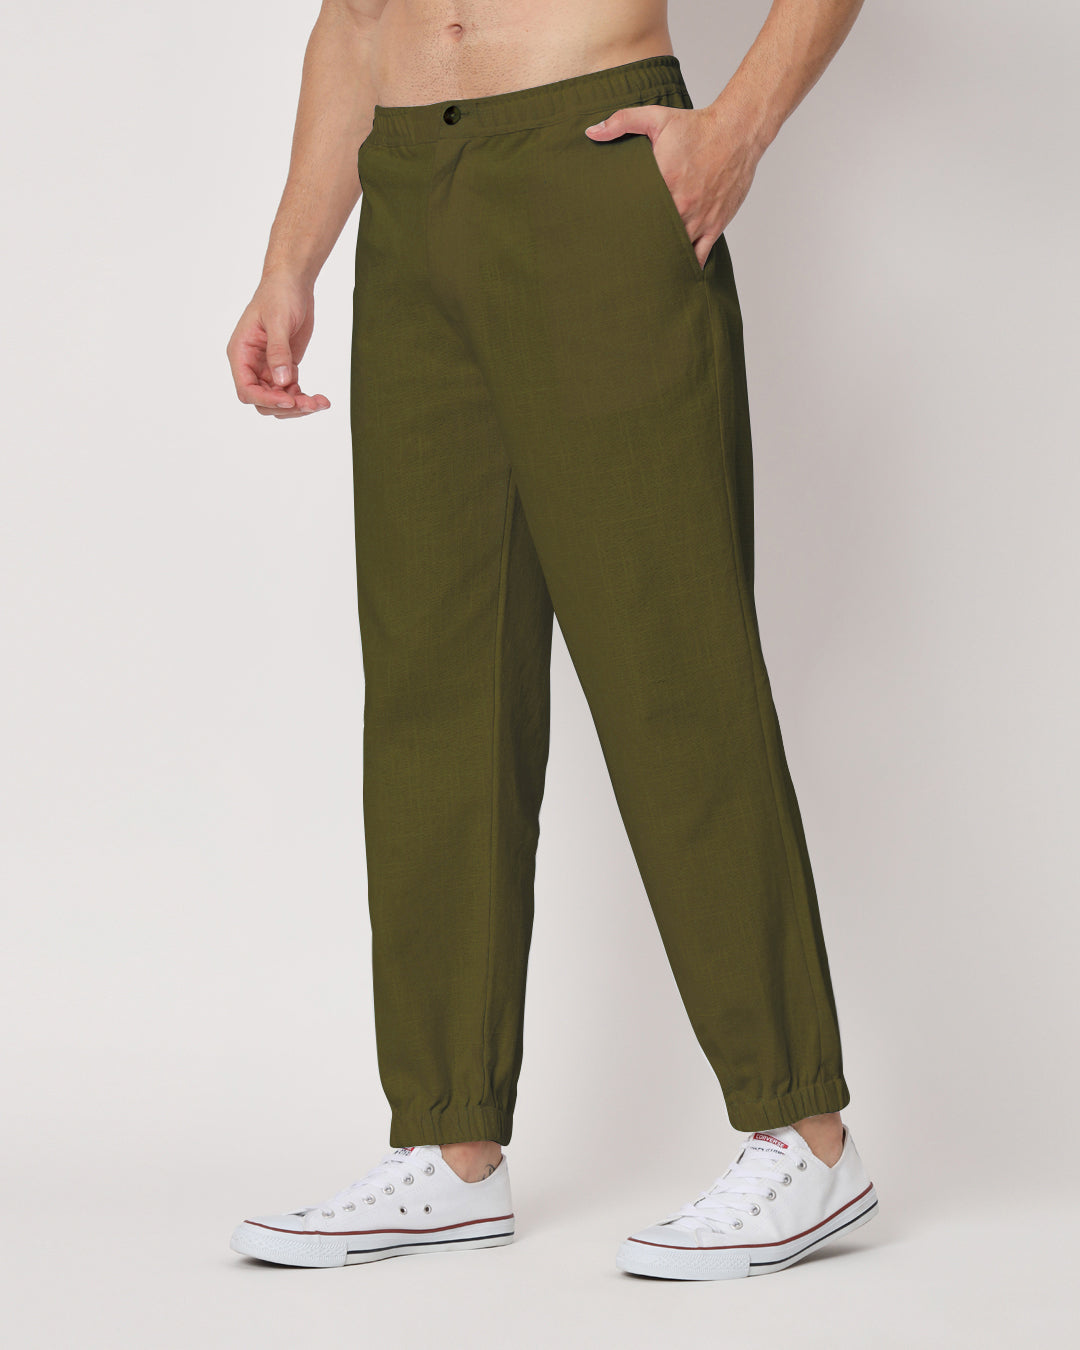 Combo: Spring Green & Olive Green Jog Men's Pants - Set of 2